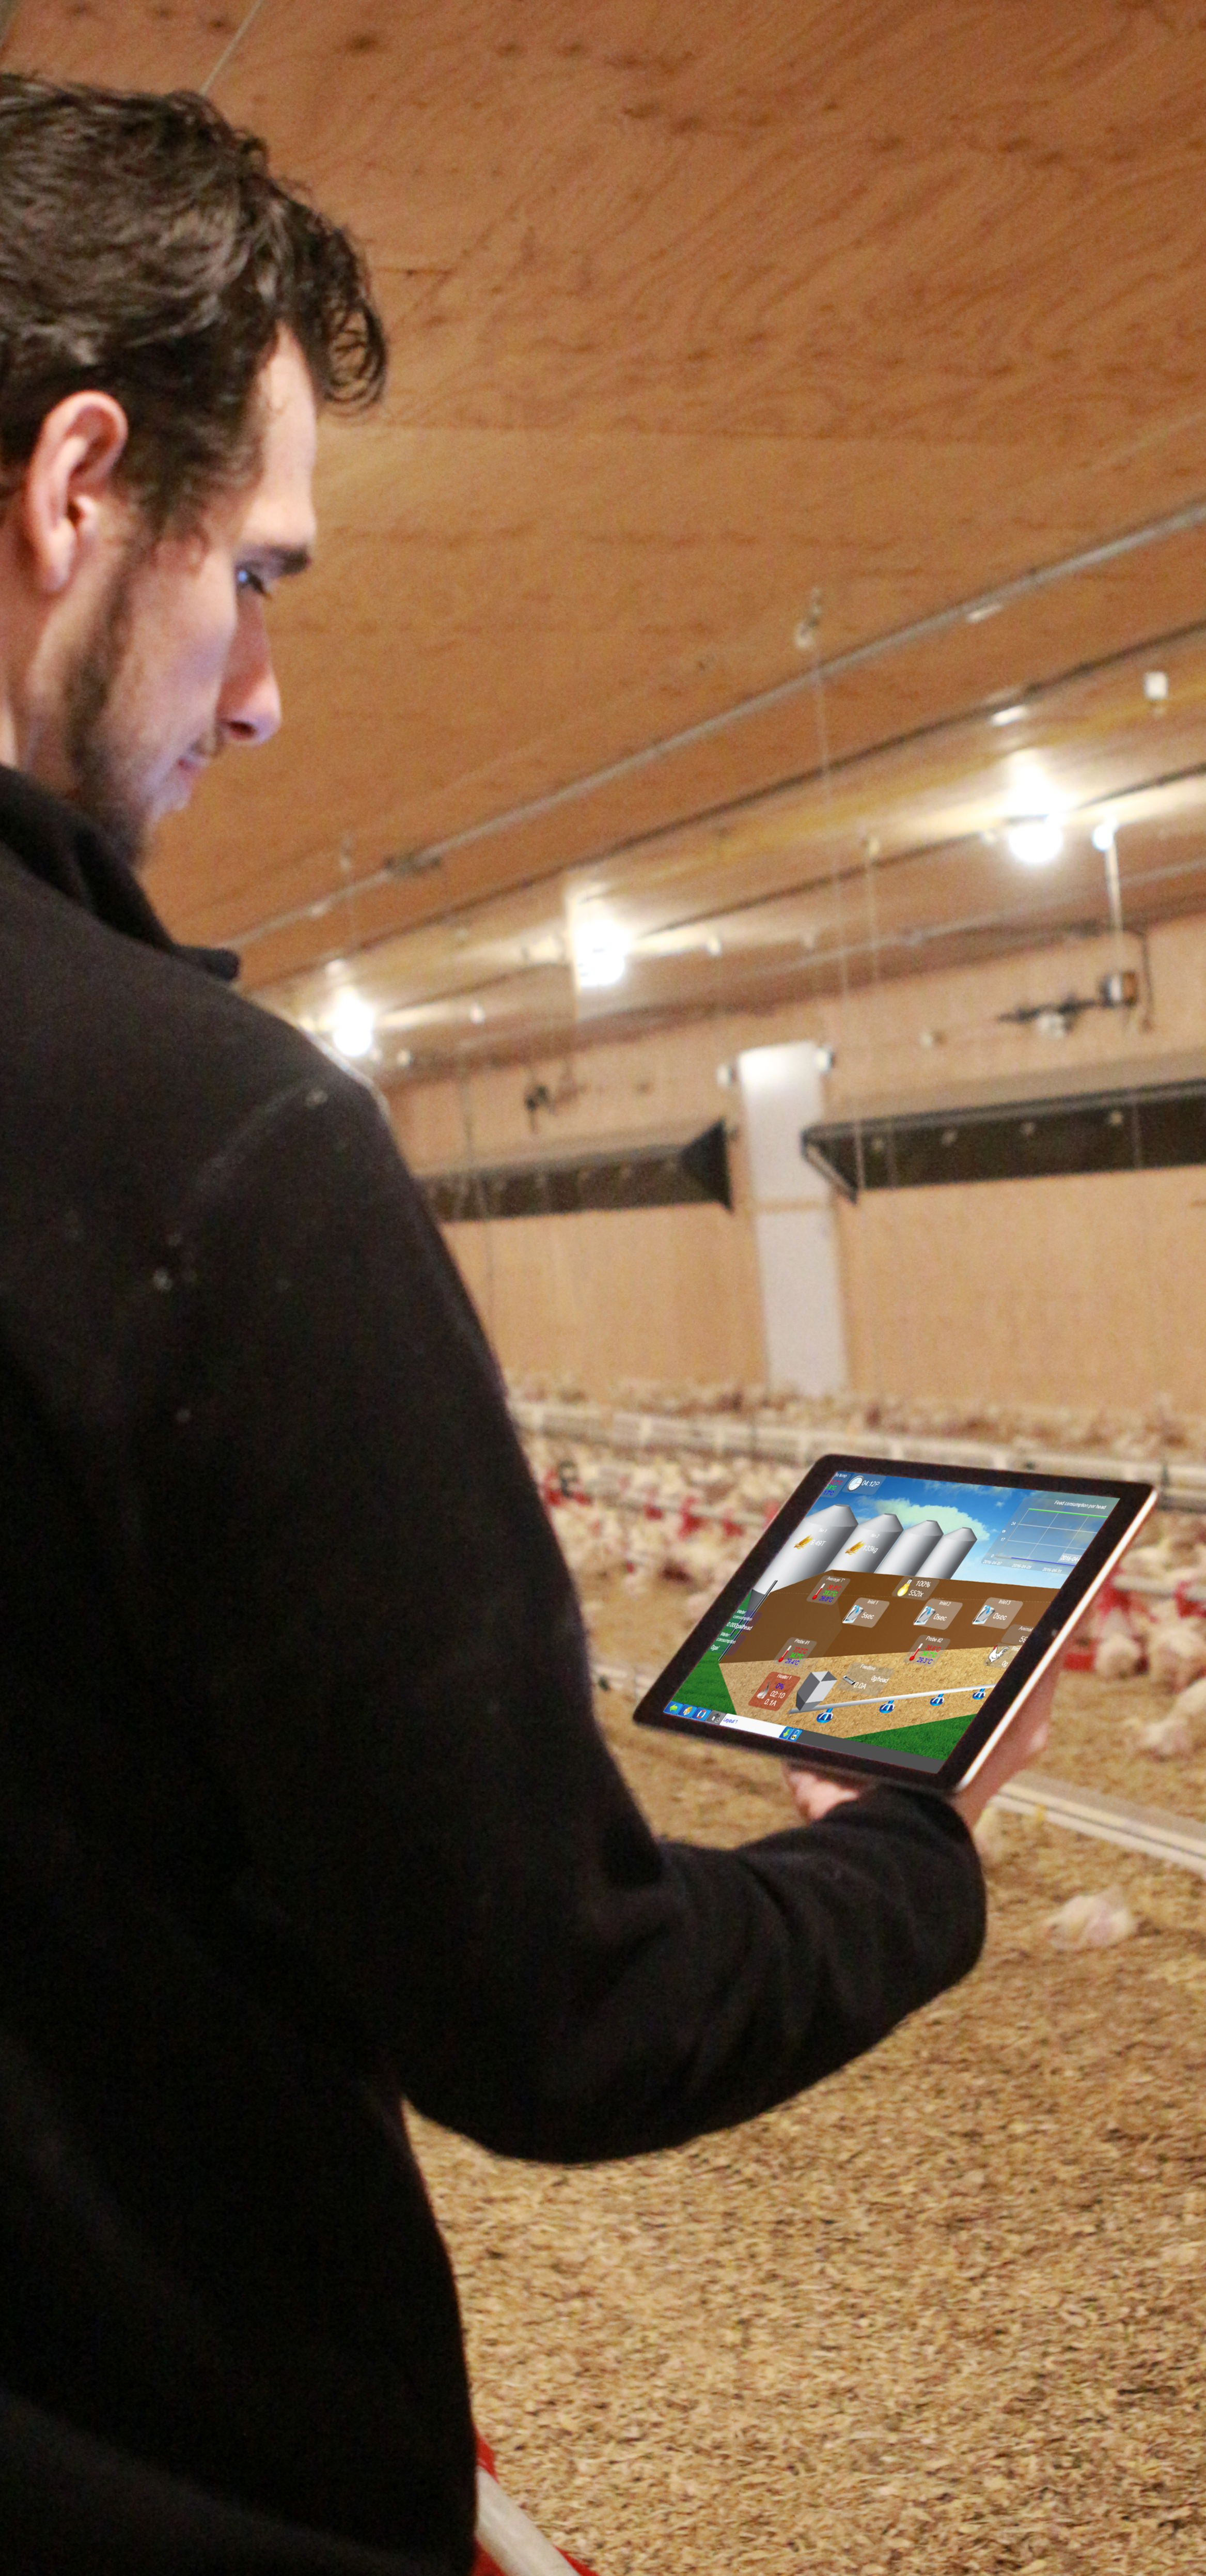 Système de contrôle avicole - Aperçu du bâtiment sur iPad